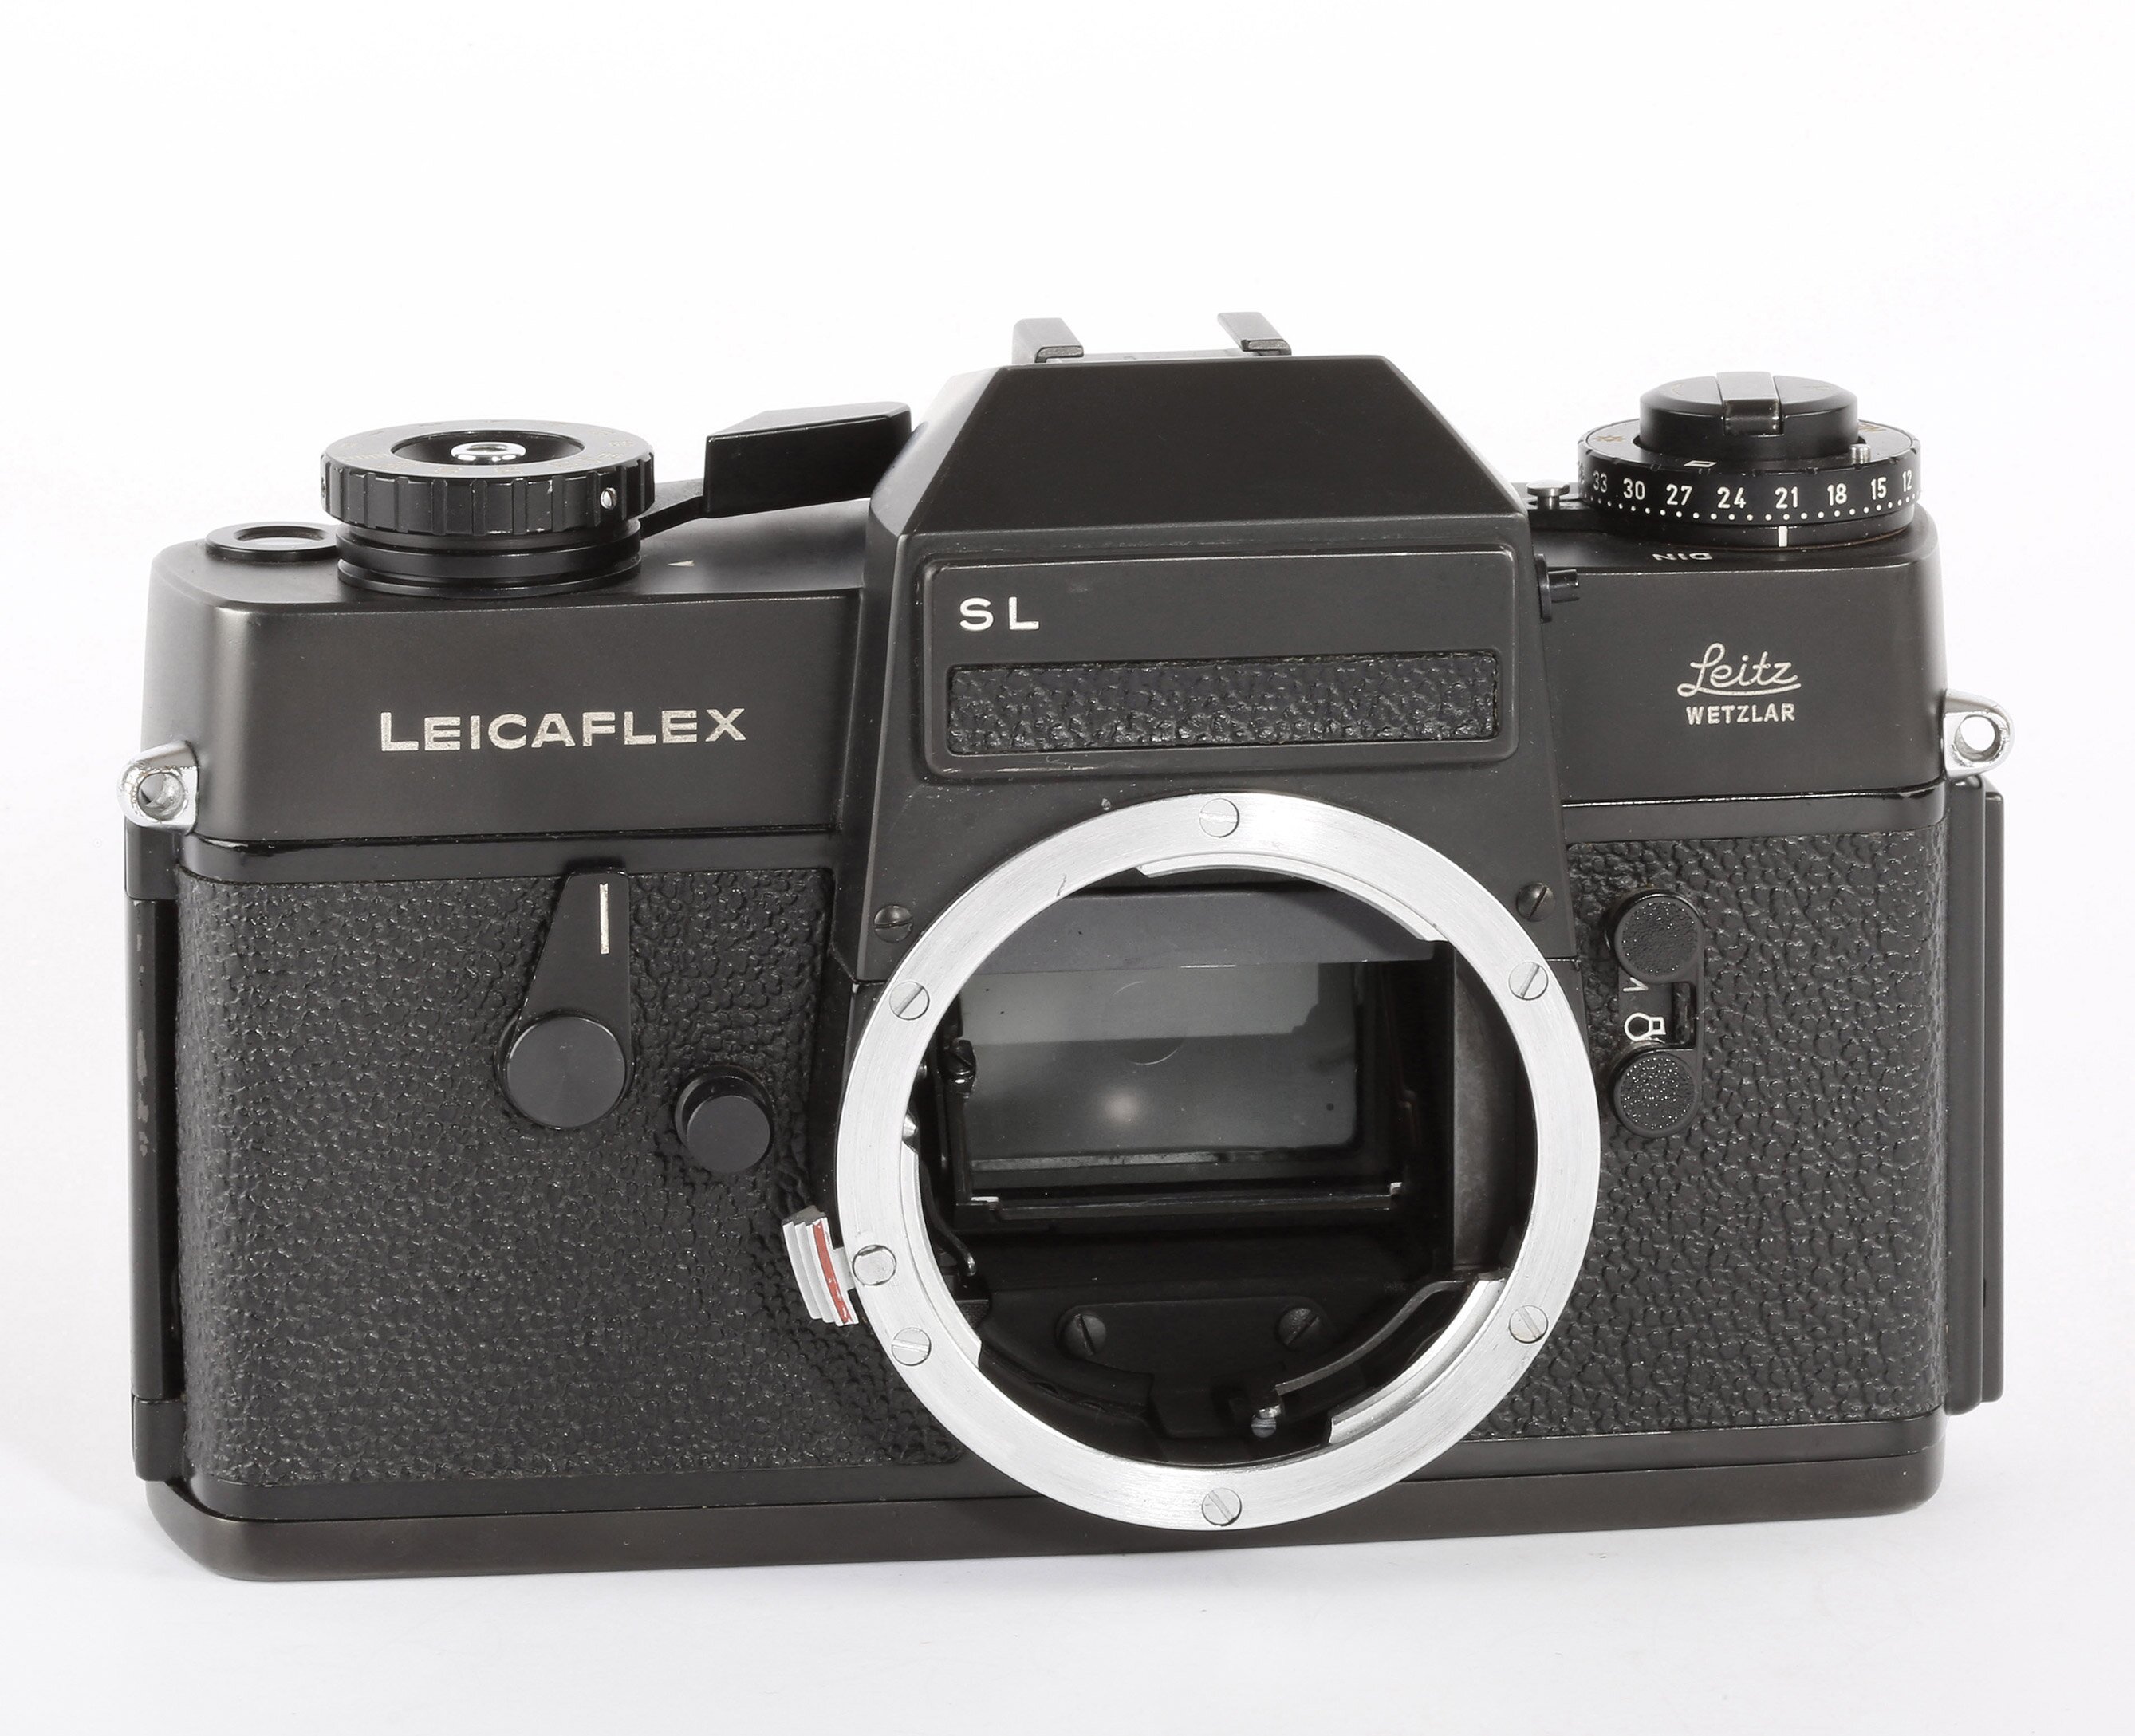 Leicaflex SL black